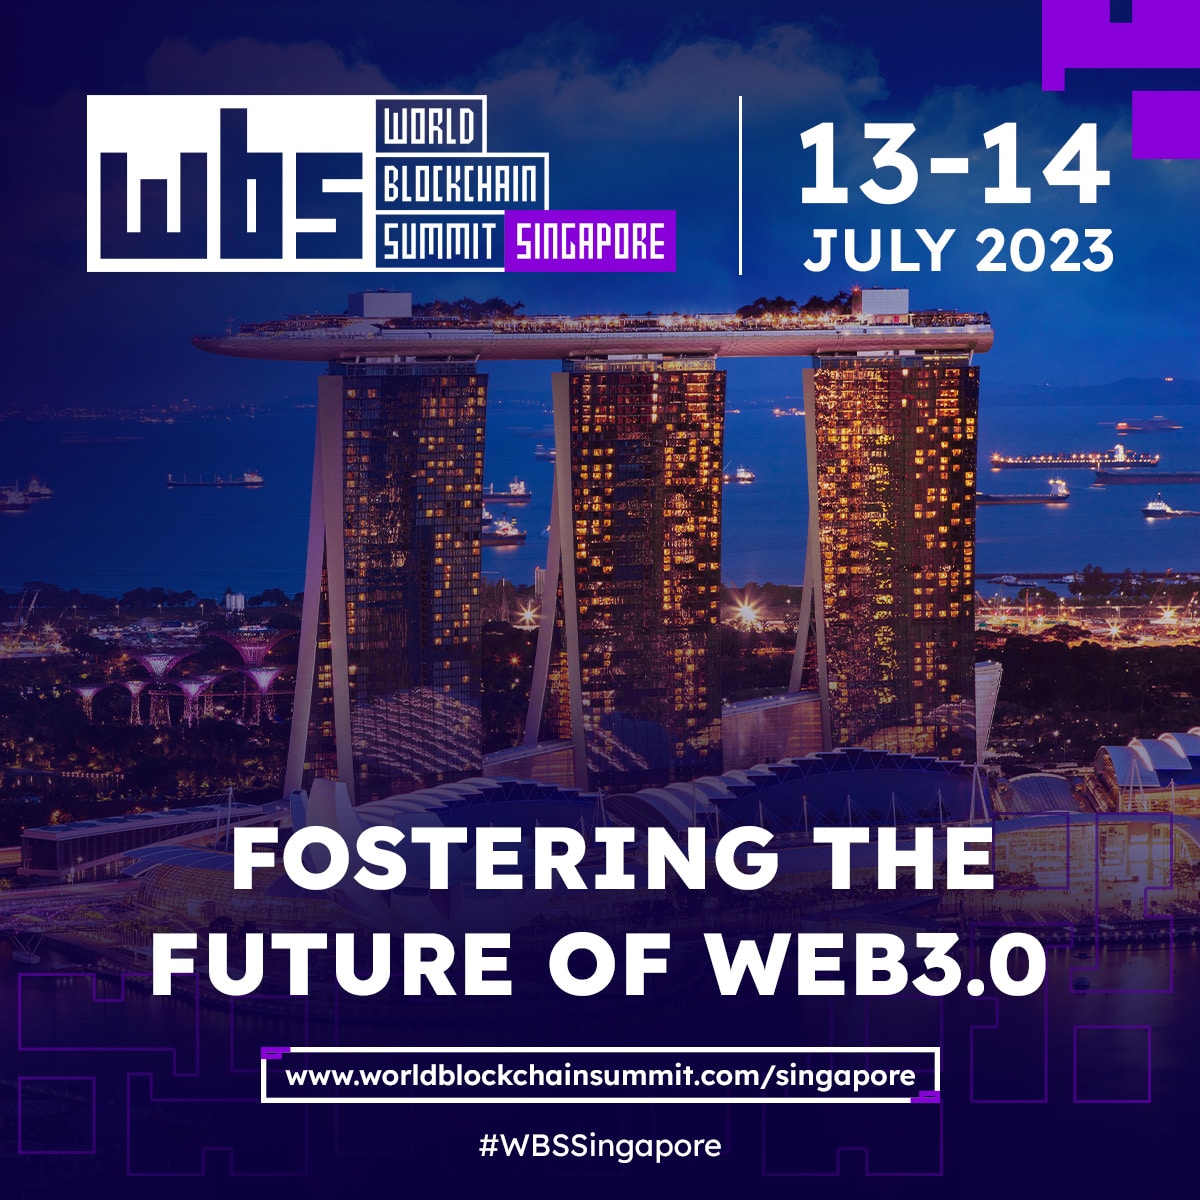 World Blockchain Summit återvänder till Singapore: sammanför globala kryptoledare och innovatörer - BitcoinWorld